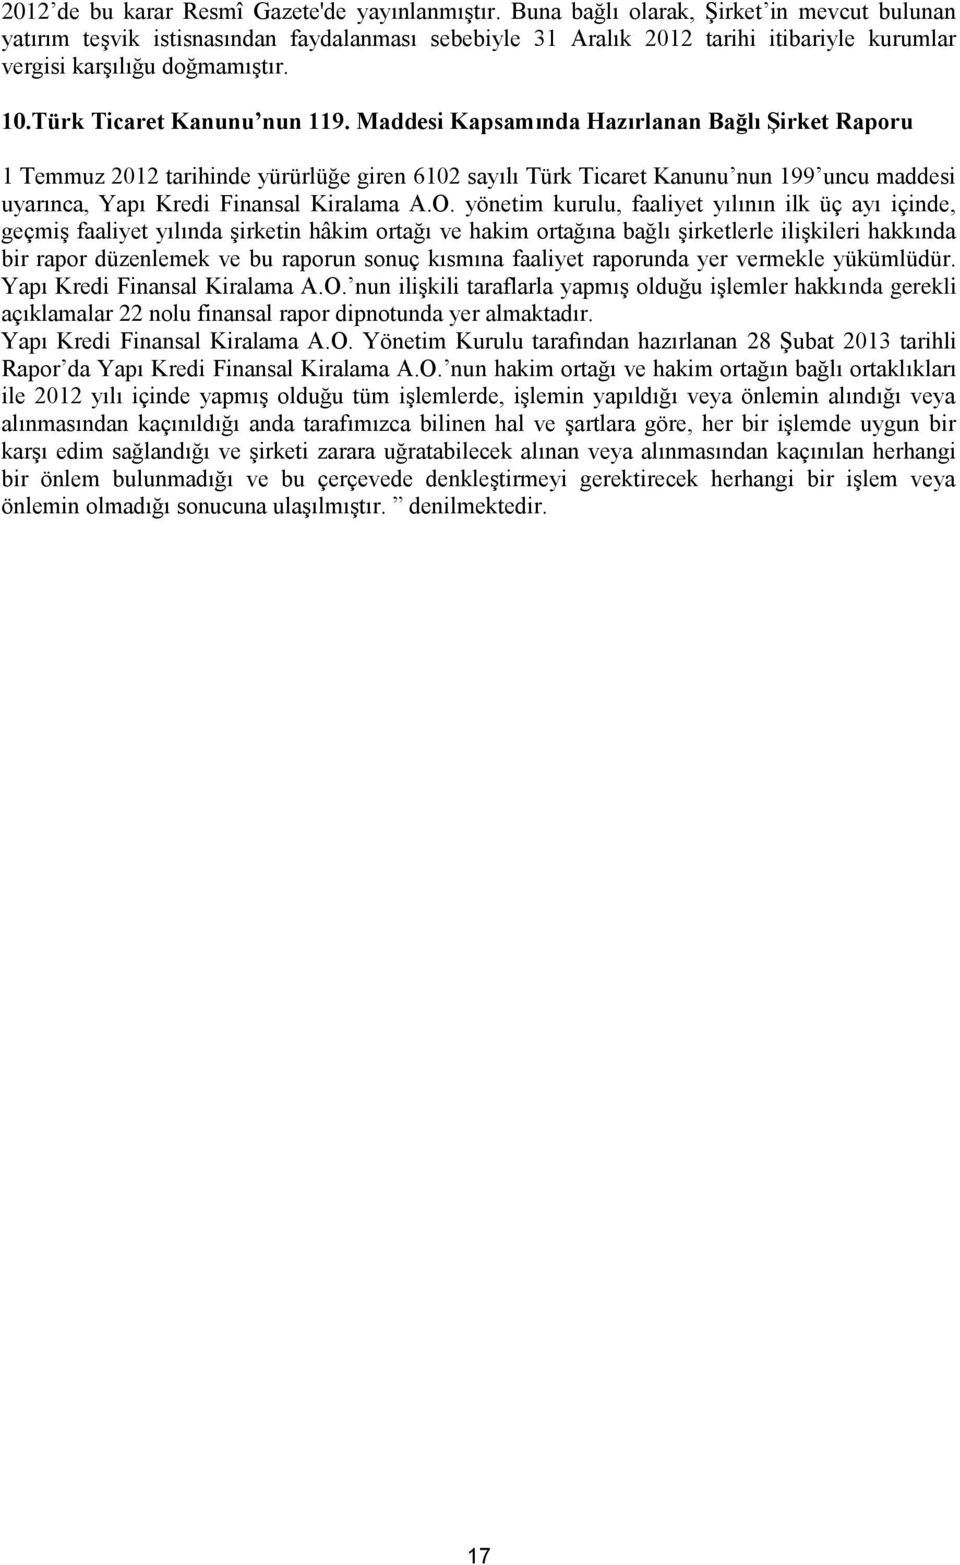 Maddesi Kapsamında Hazırlanan Bağlı Şirket Raporu 1 Temmuz 2012 tarihinde yürürlüğe giren 6102 sayılı Türk Ticaret Kanunu nun 199 uncu maddesi uyarınca, Yapı Kredi Finansal Kiralama A.O.